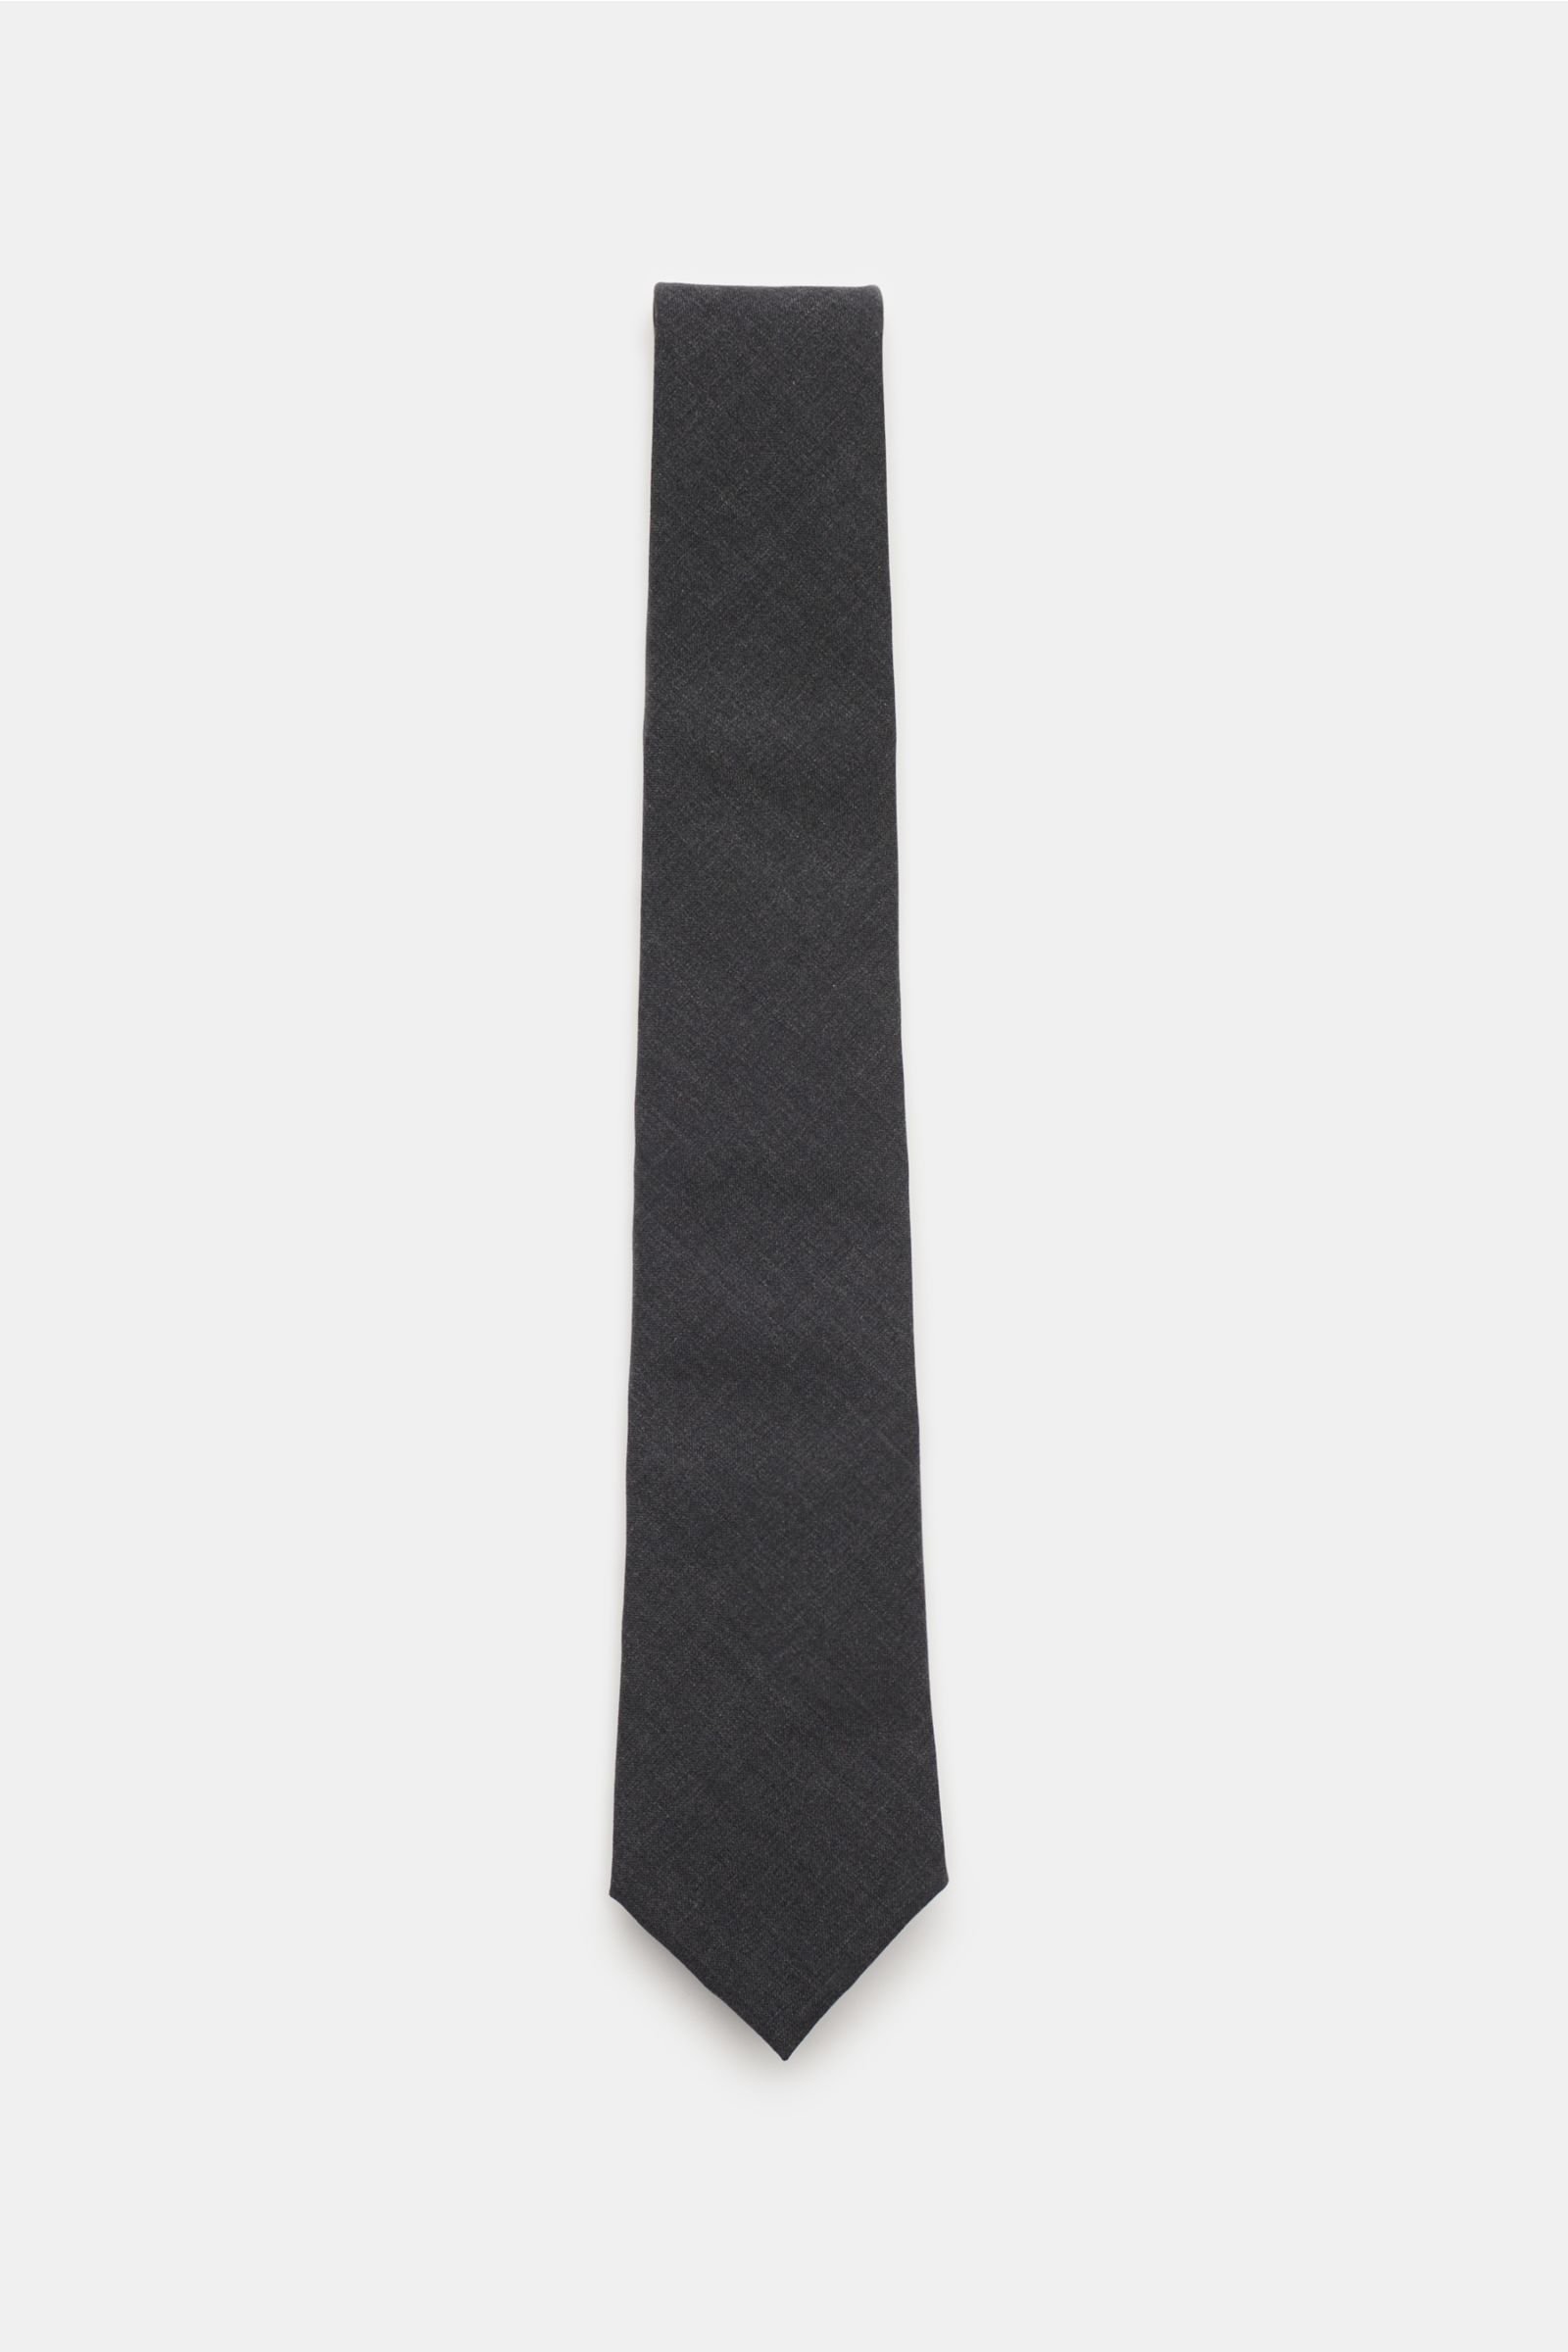 Wool tie dark grey